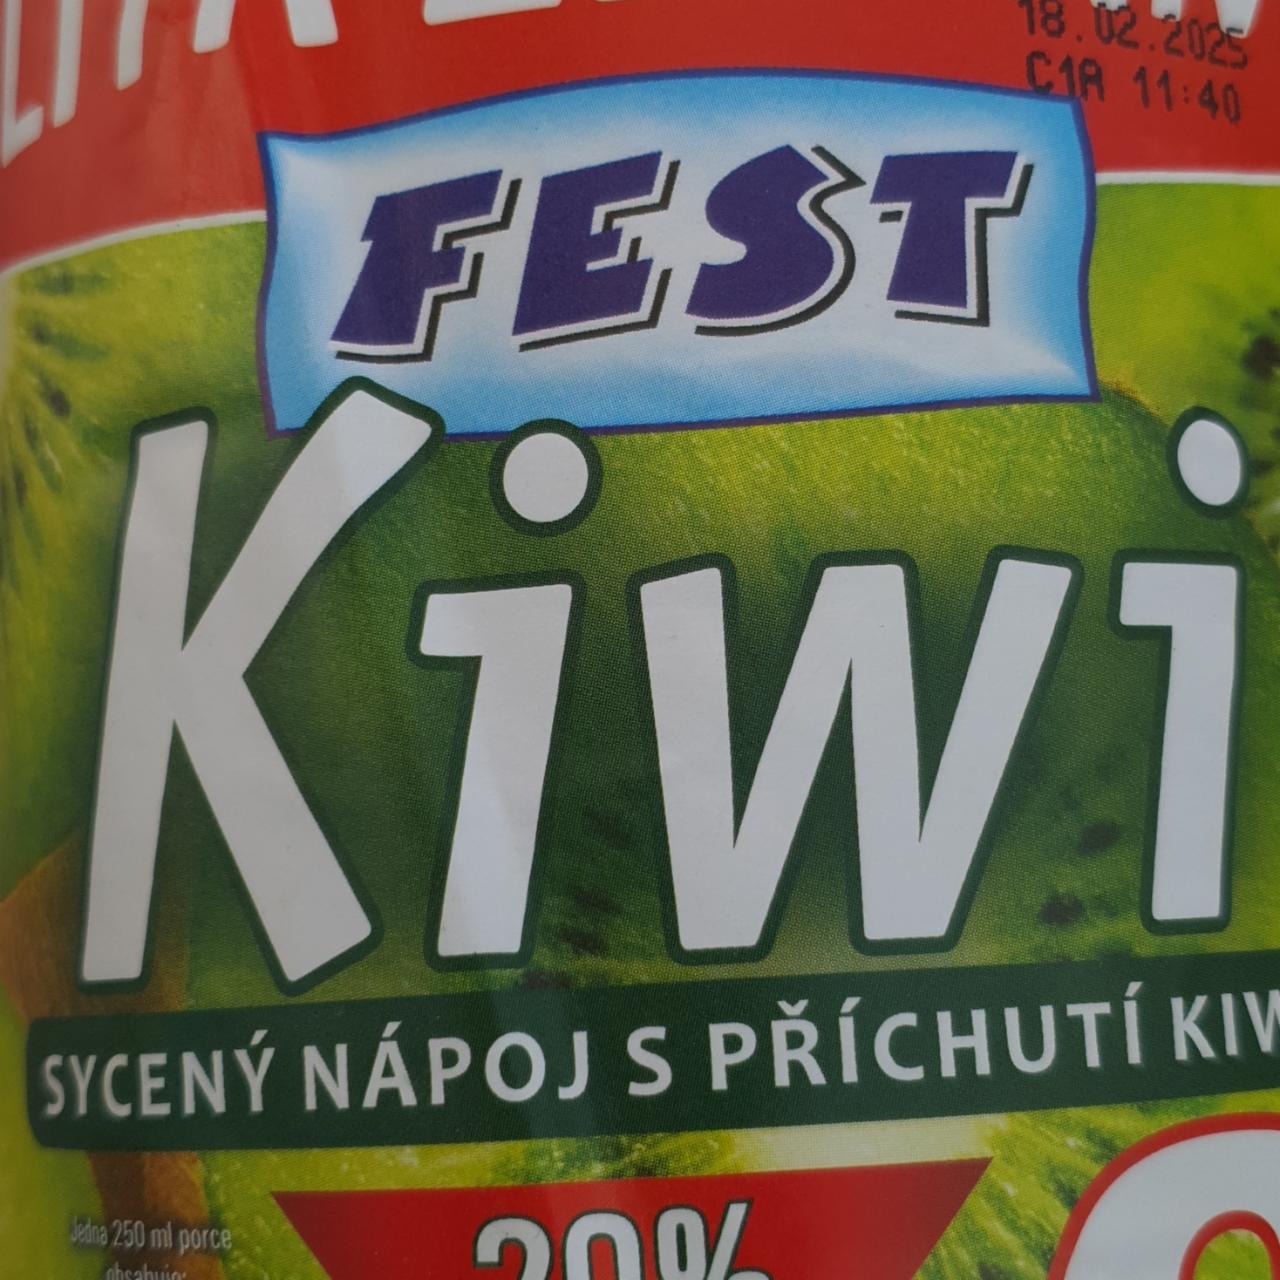 Fotografie - Kiwi sycený nápoj s příchutí kiwi Fest